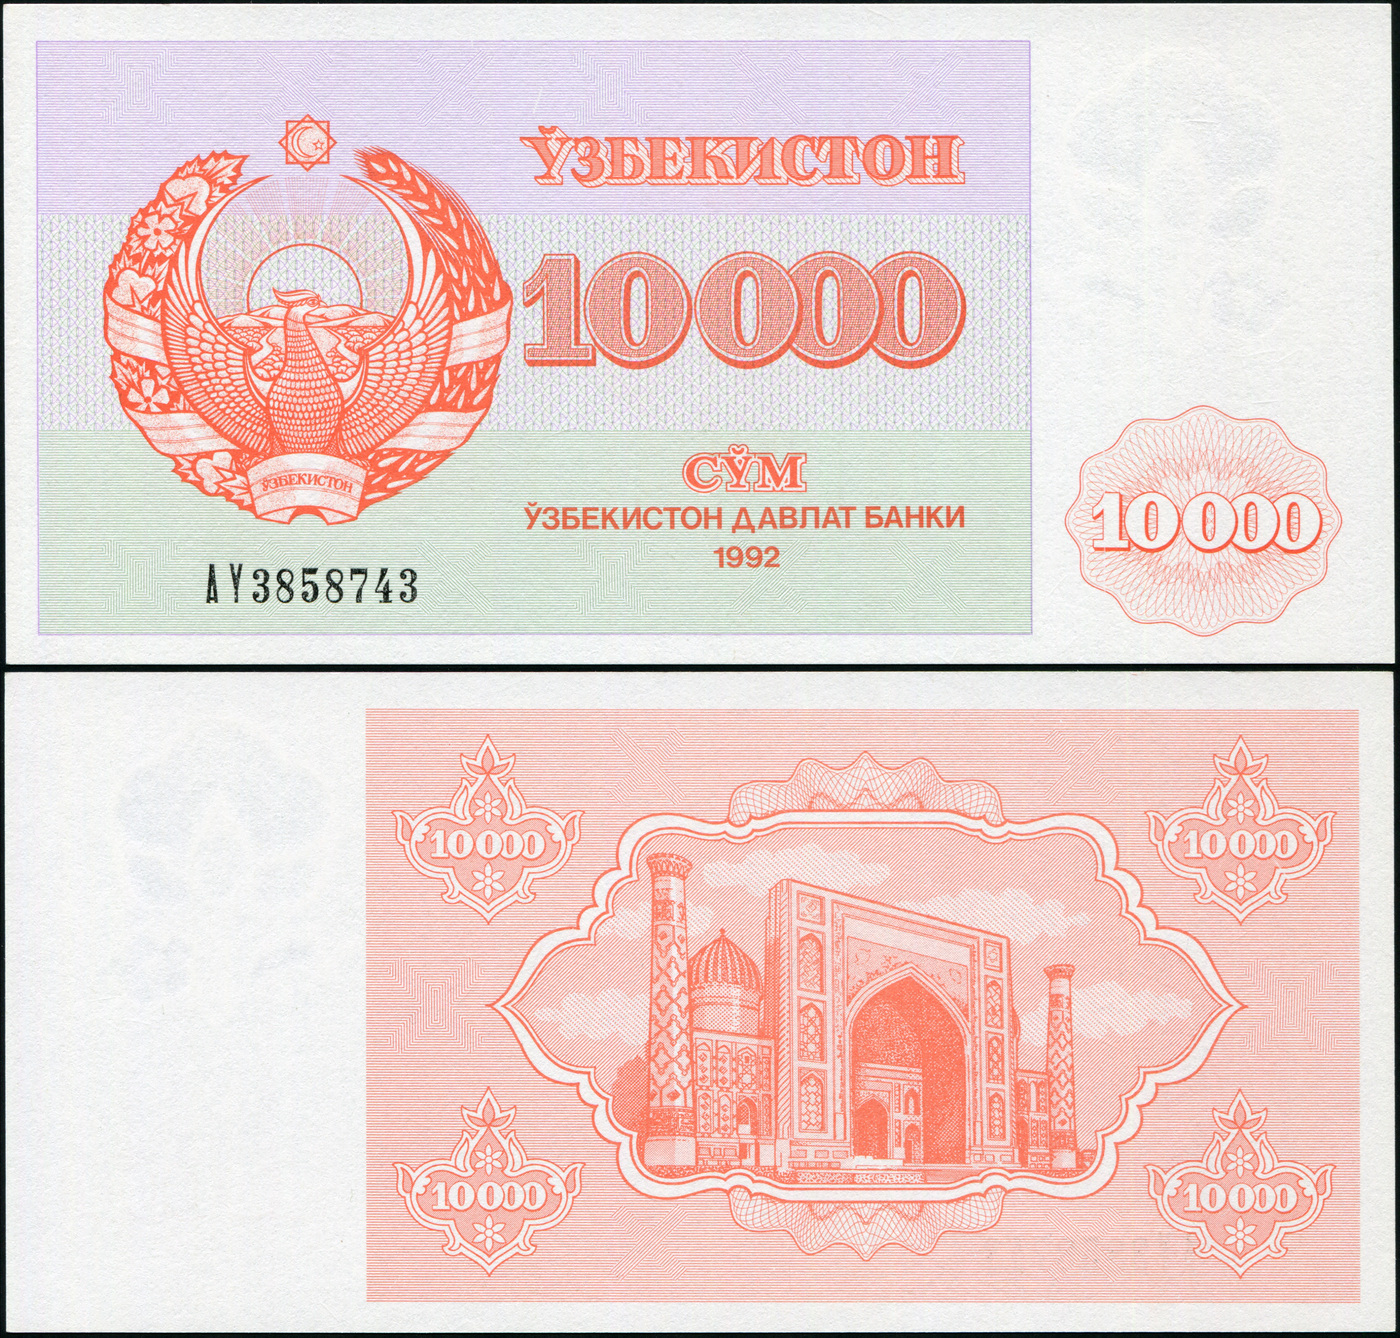 800 сум. Купюра Узбекистан 1992. Банкноты Узбекистана 10000. Банкнота Узбекистан 10000 сум 1994. Узбекистан 10000 сум UNC (пресс).